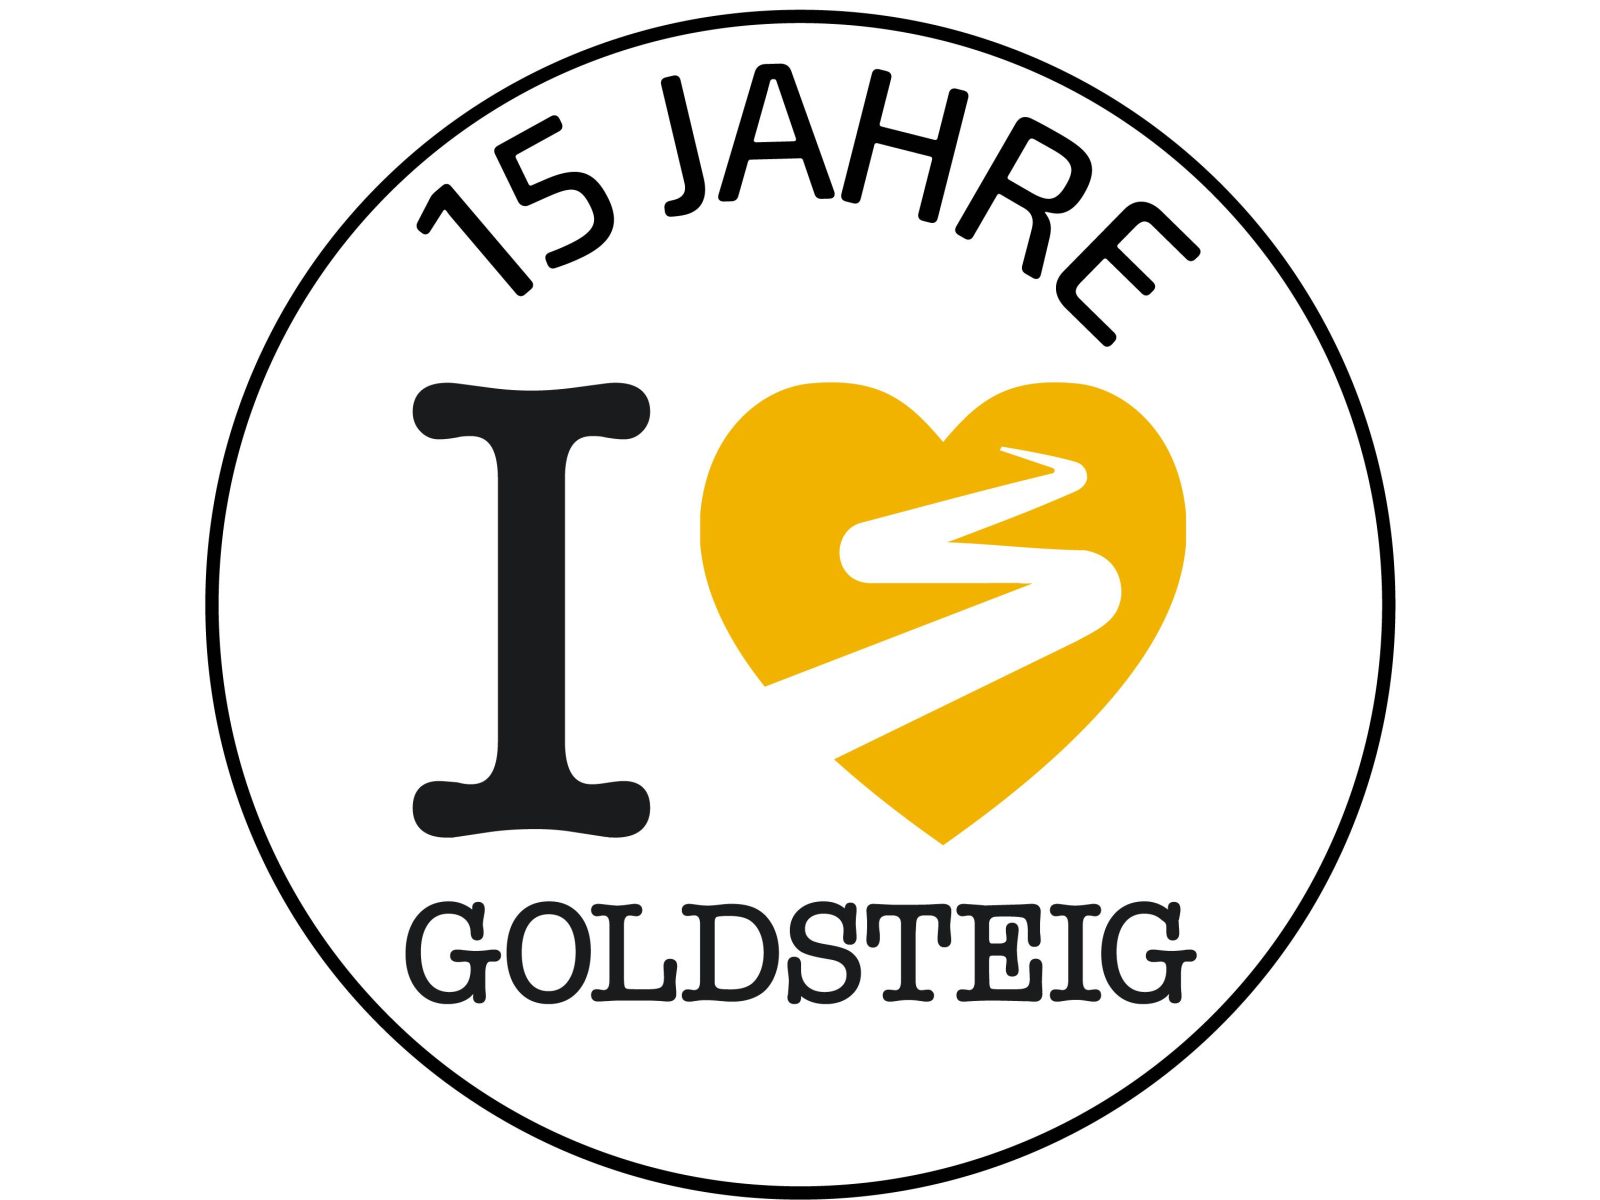 Logo 15 Jahre Goldsteig